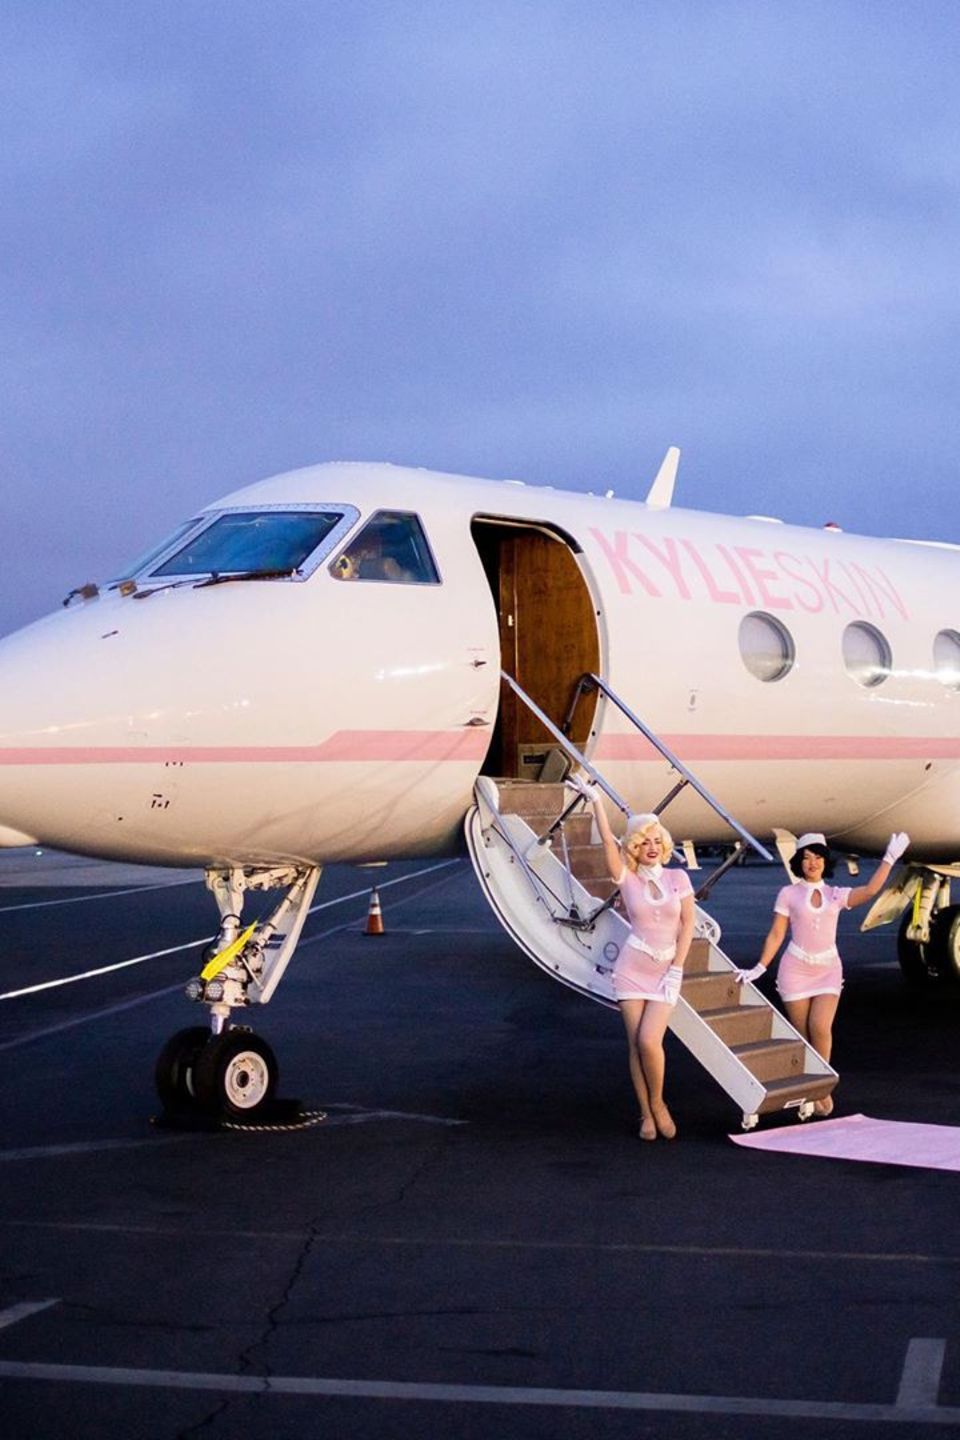 Clevere Geschäftsfrau: Mit ihrem Label "Kylie Skin" begibt sich Kylie Jenner mit geladenen Freunden im eigens gebrandeten Privatjet auf Reisen. 